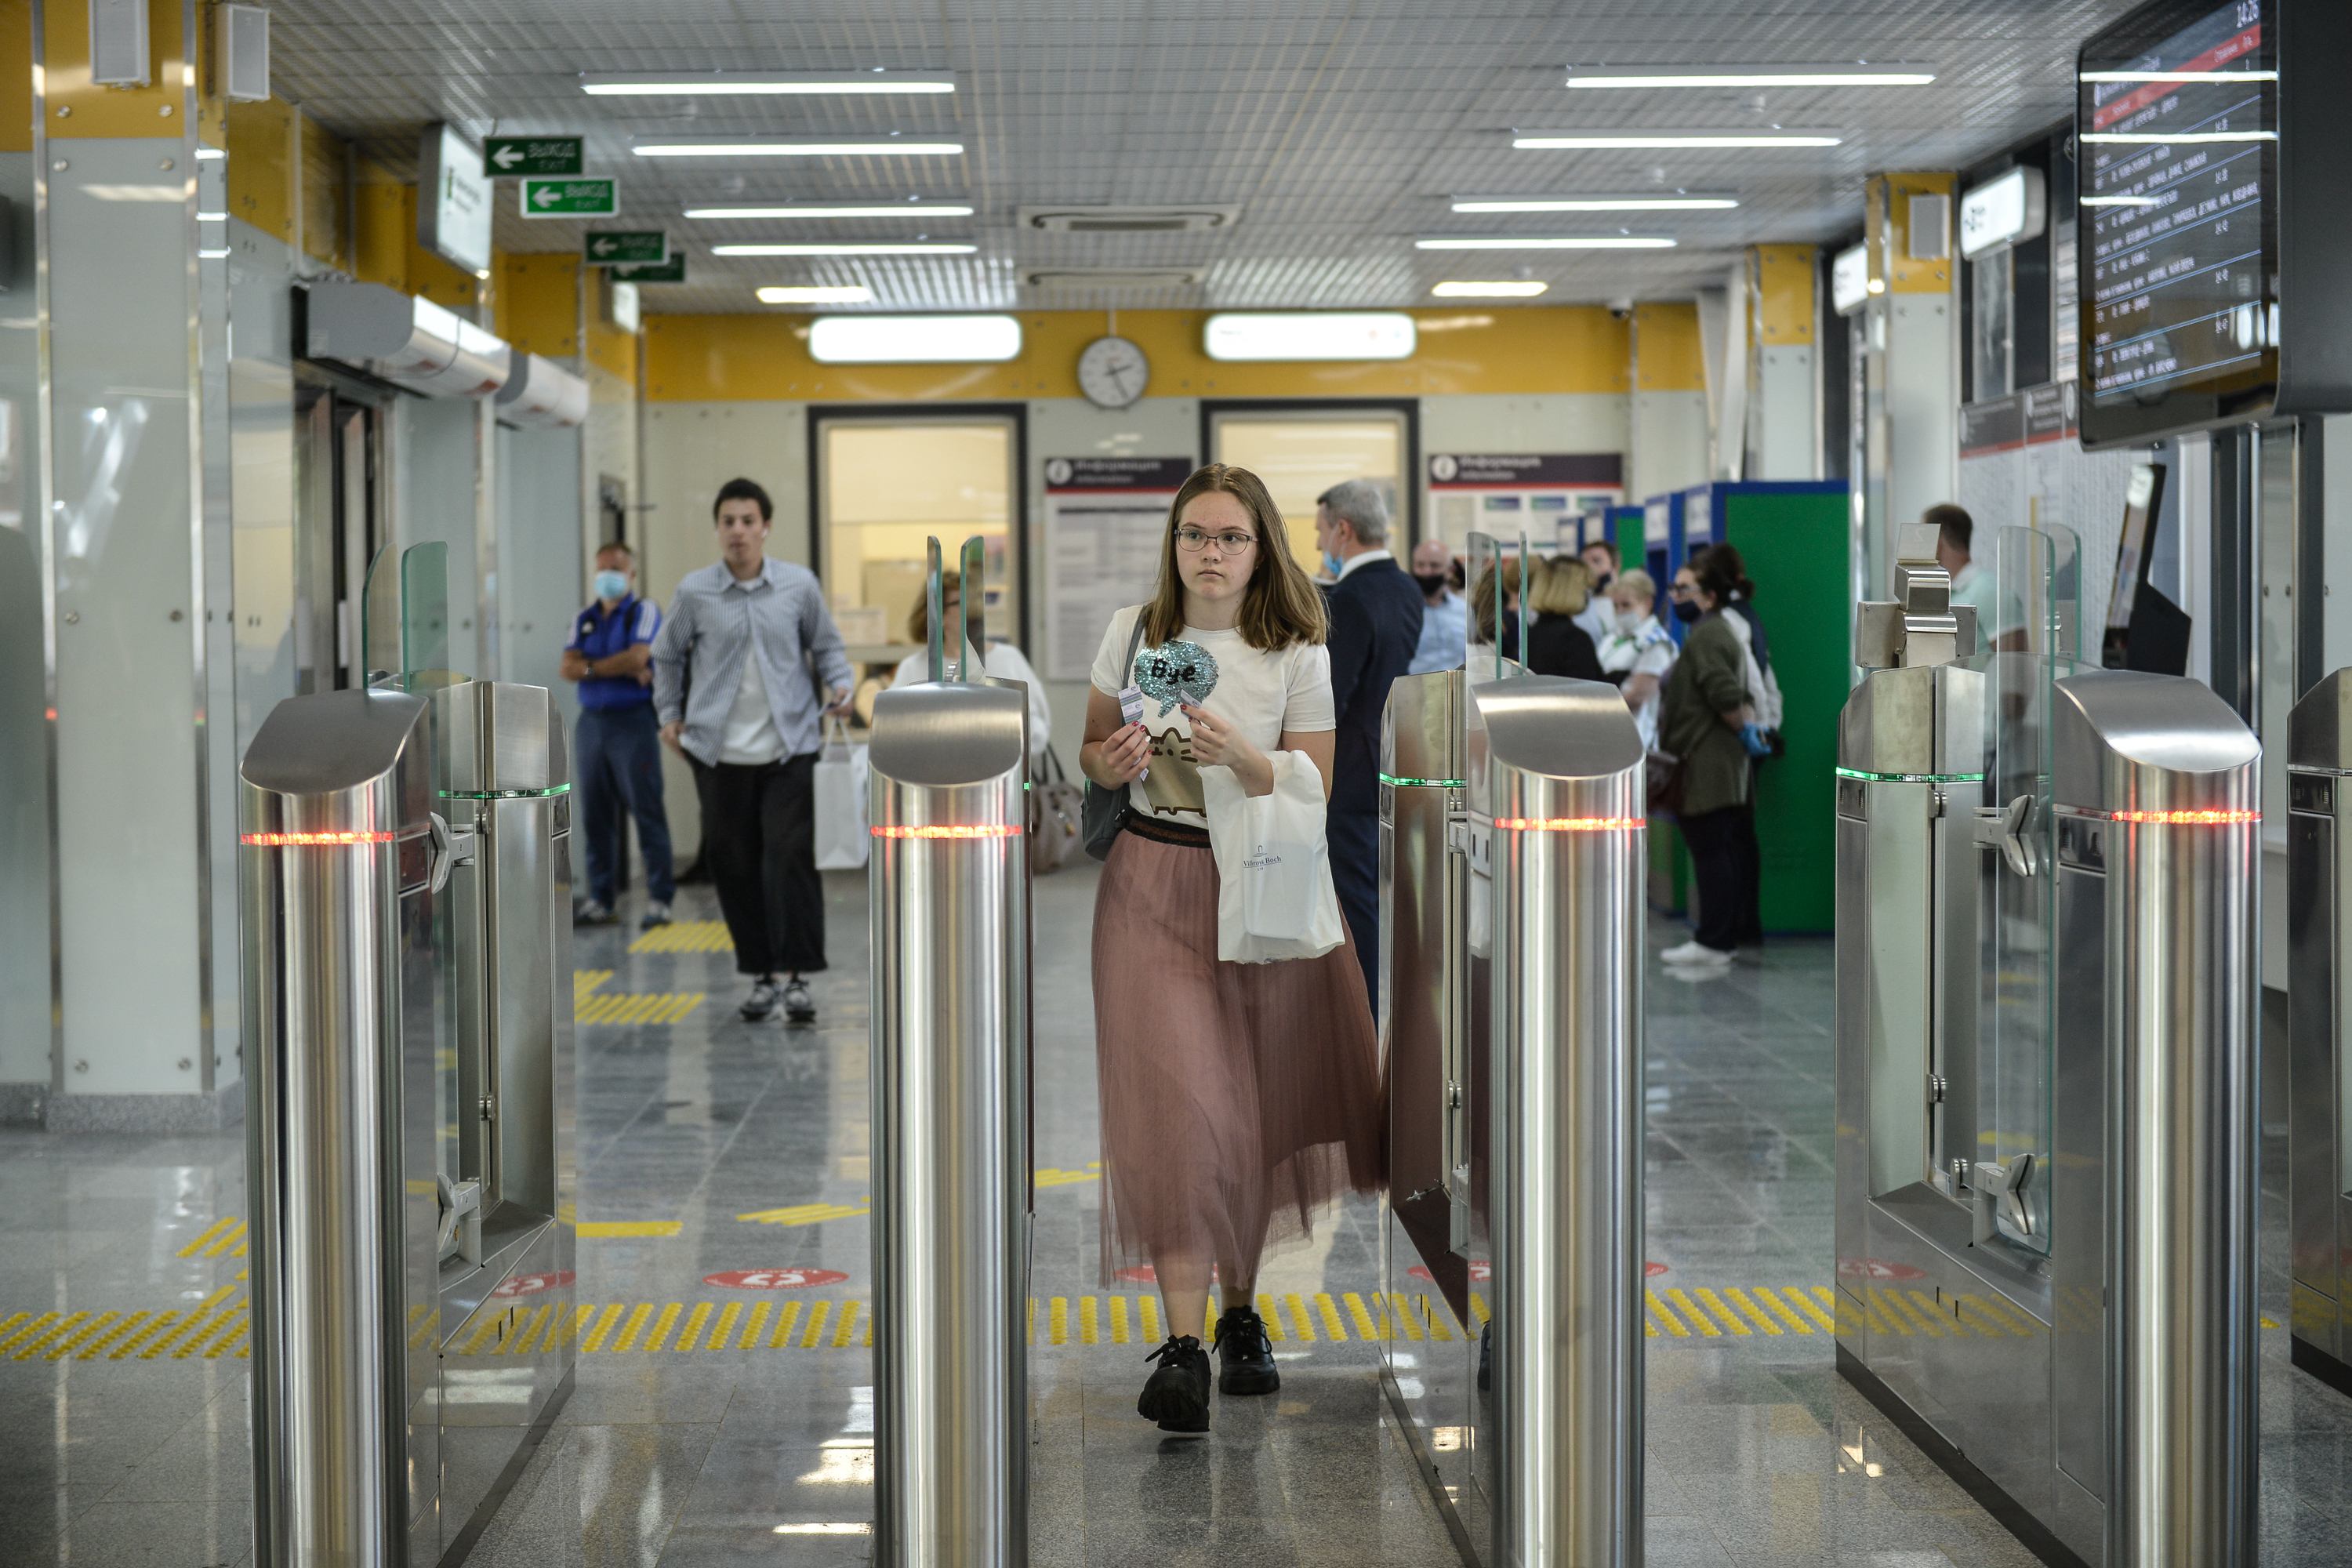 Около 75 процентов пассажиров МЦД с картой «Тройка» пользуются бесплатной пересадкой на метро. Фото: Наталья Феоктистова